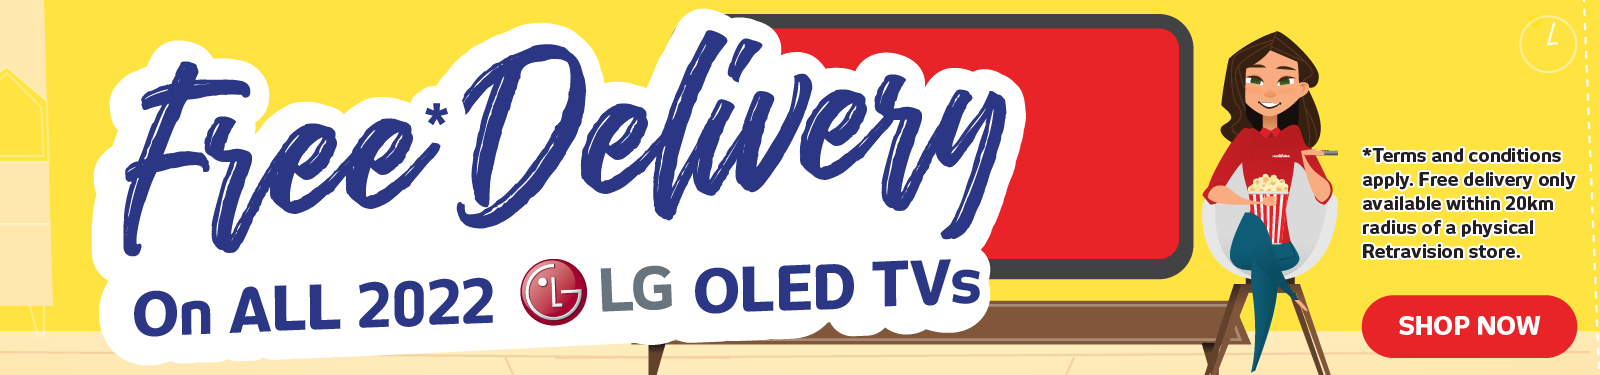 Bonus Delivery On LG OLED TVs